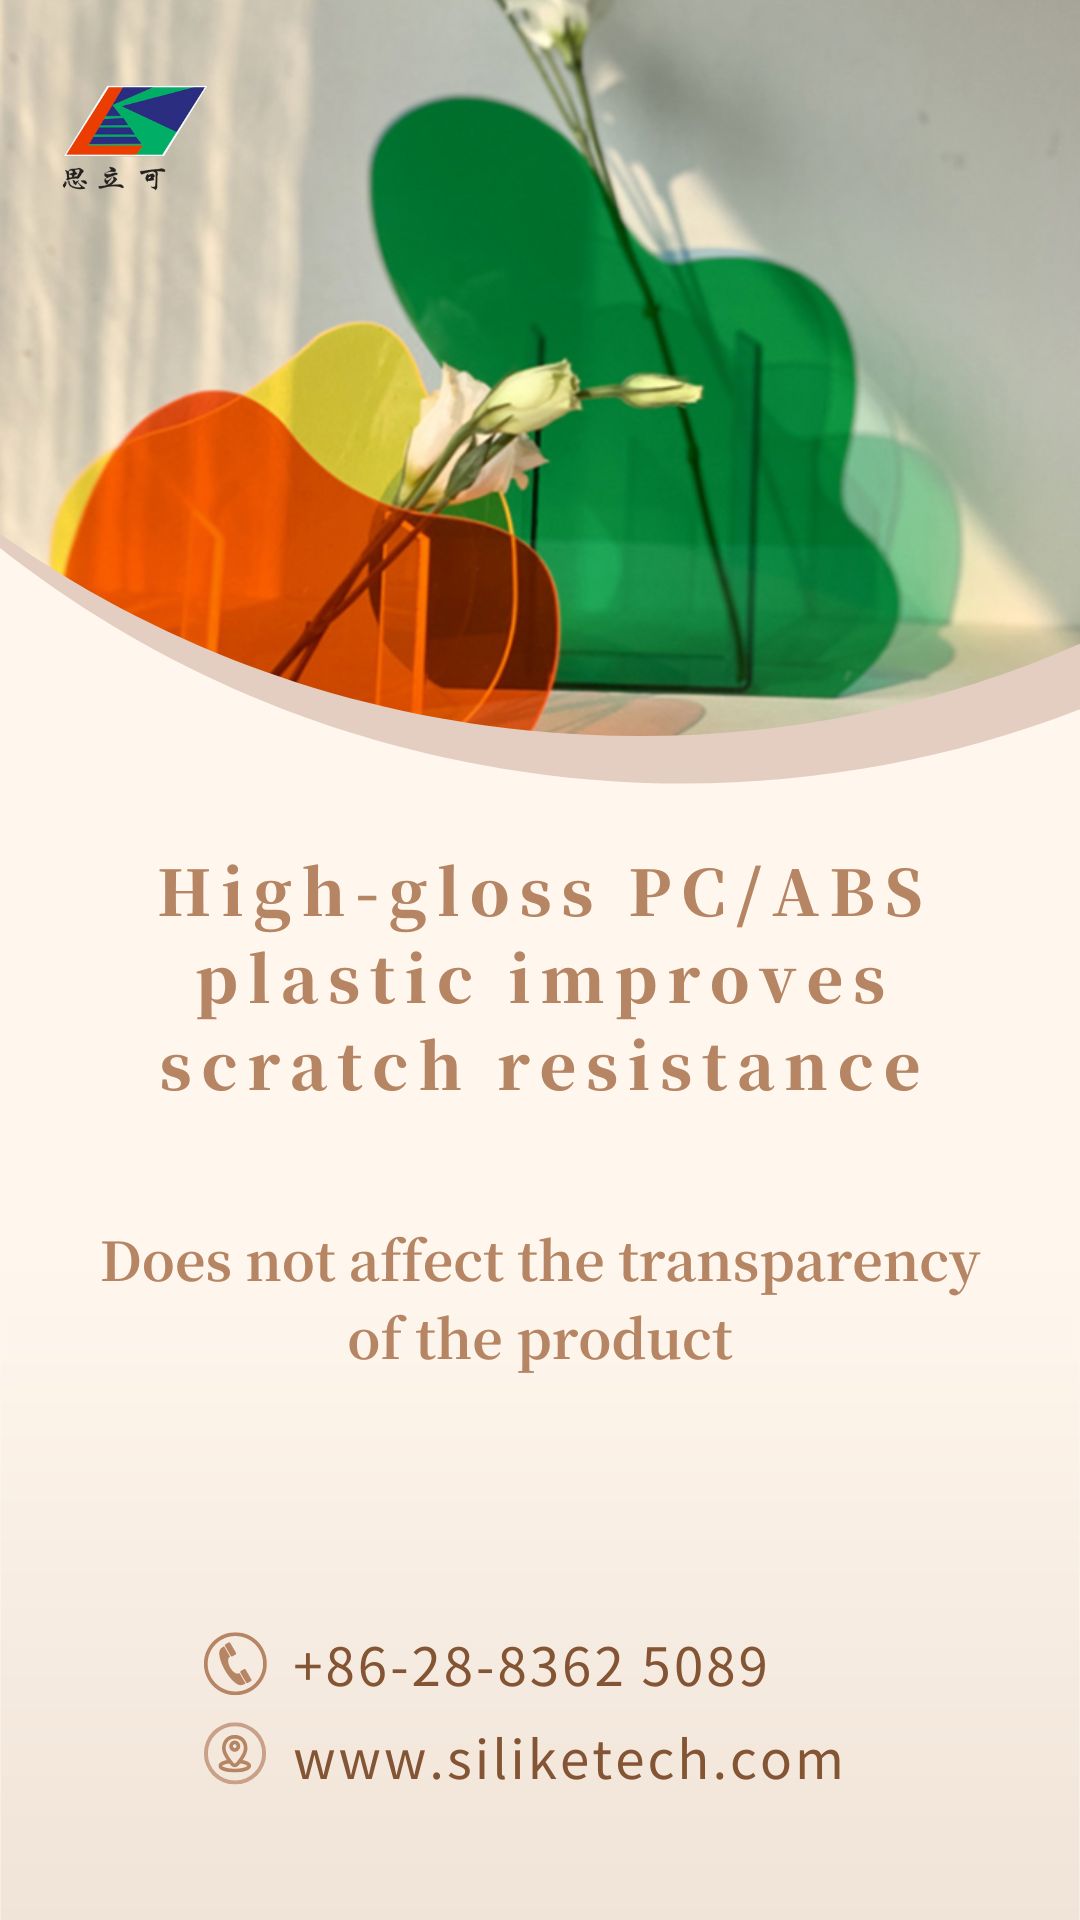 Solución de plástico PC/ABS de alto brillo para mellorar a resistencia aos arañazos